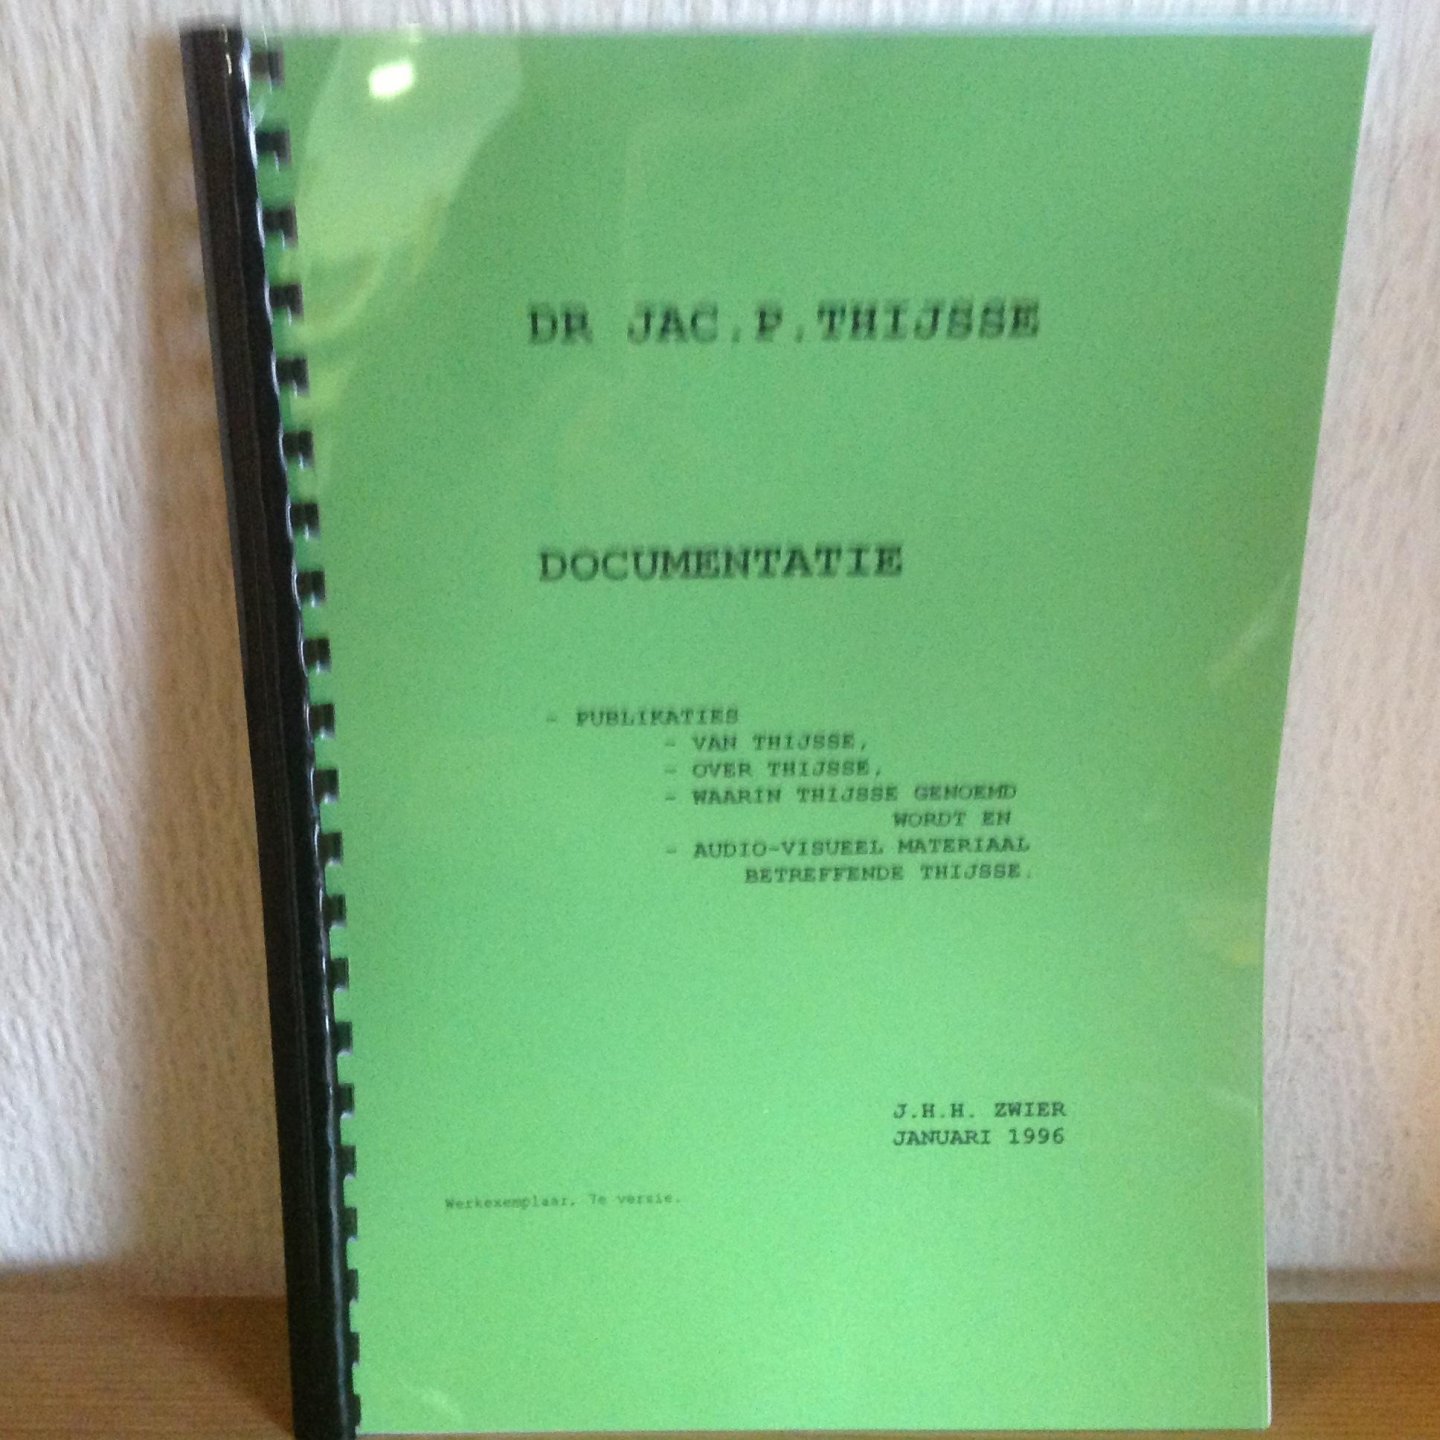 J H H Zwier - Dr. Jac p Thijsse DOcumentatie